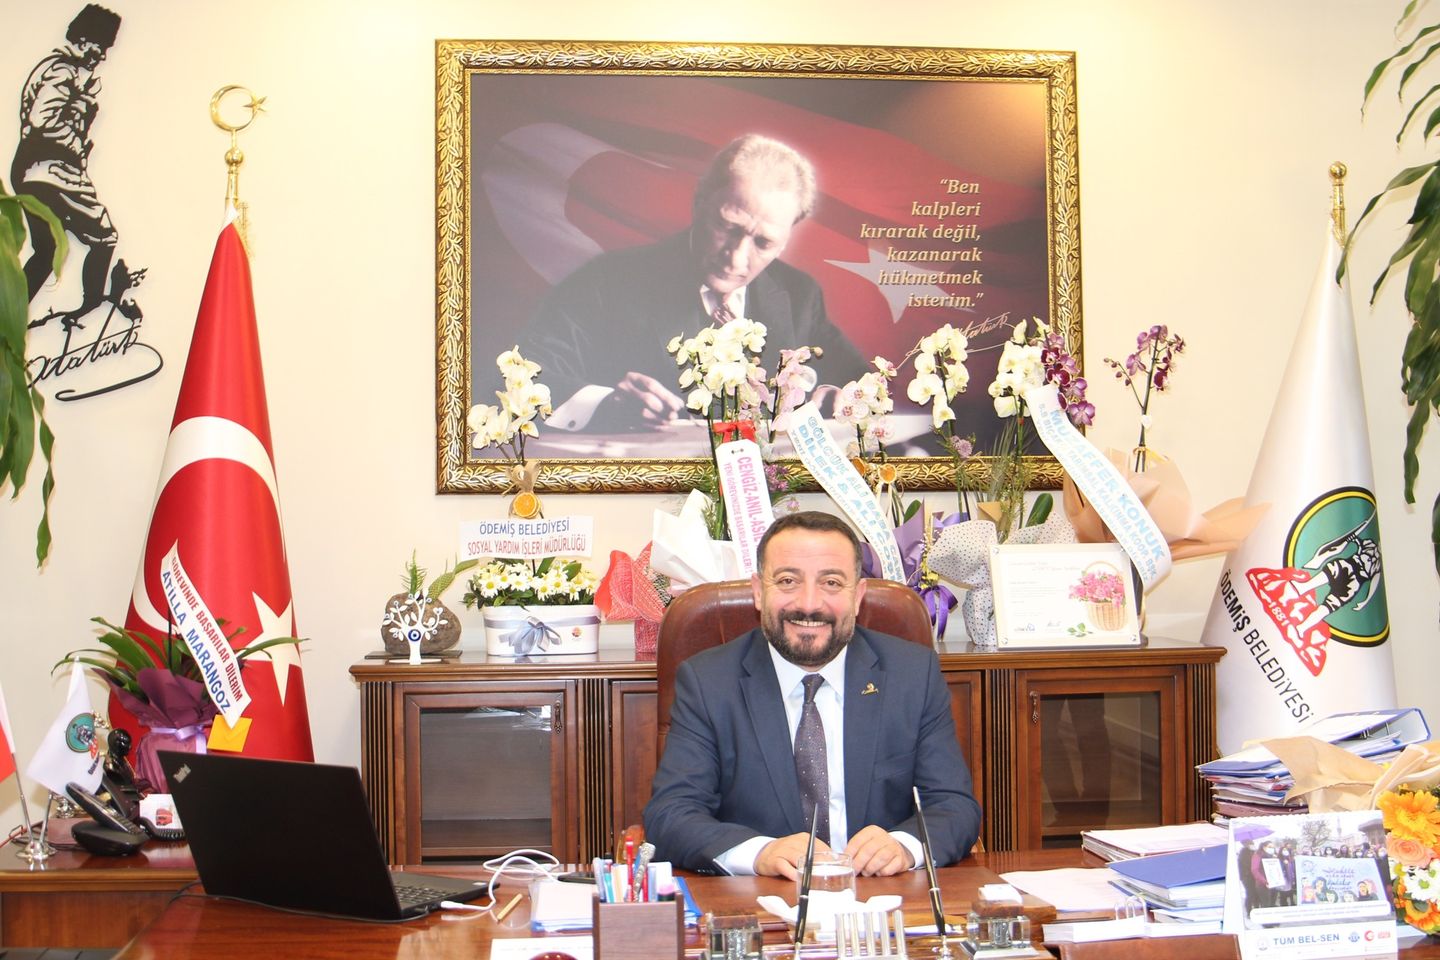 Ödemiş Belediye Başkanı Mustafa Turan, belediyenin mali yapısı ve geleceği hakkında açıklama yaptı.